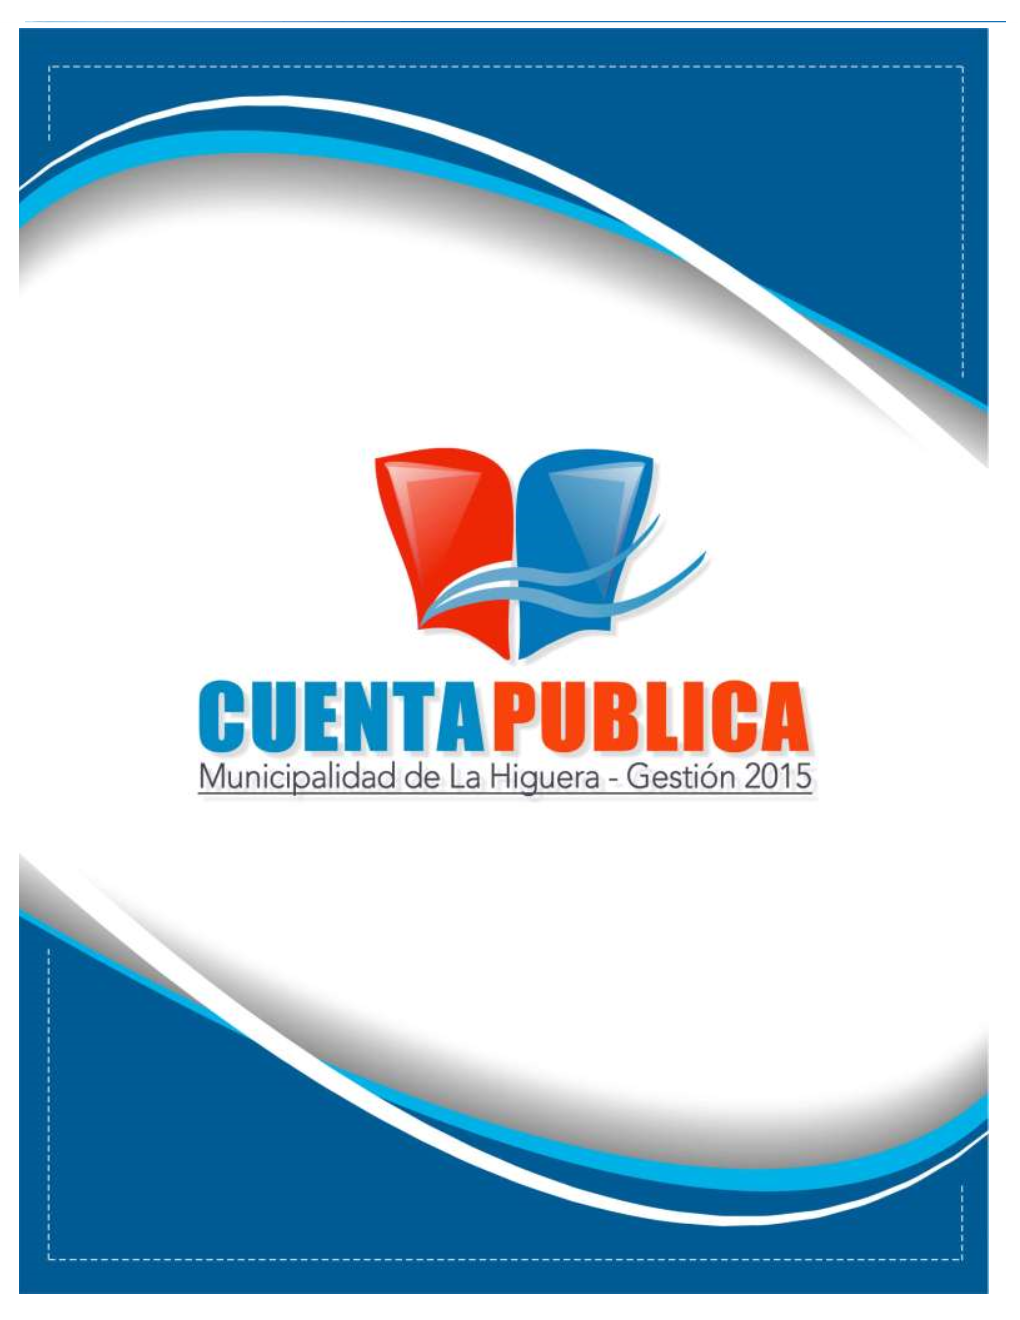 Cuentapublica2015.Pdf